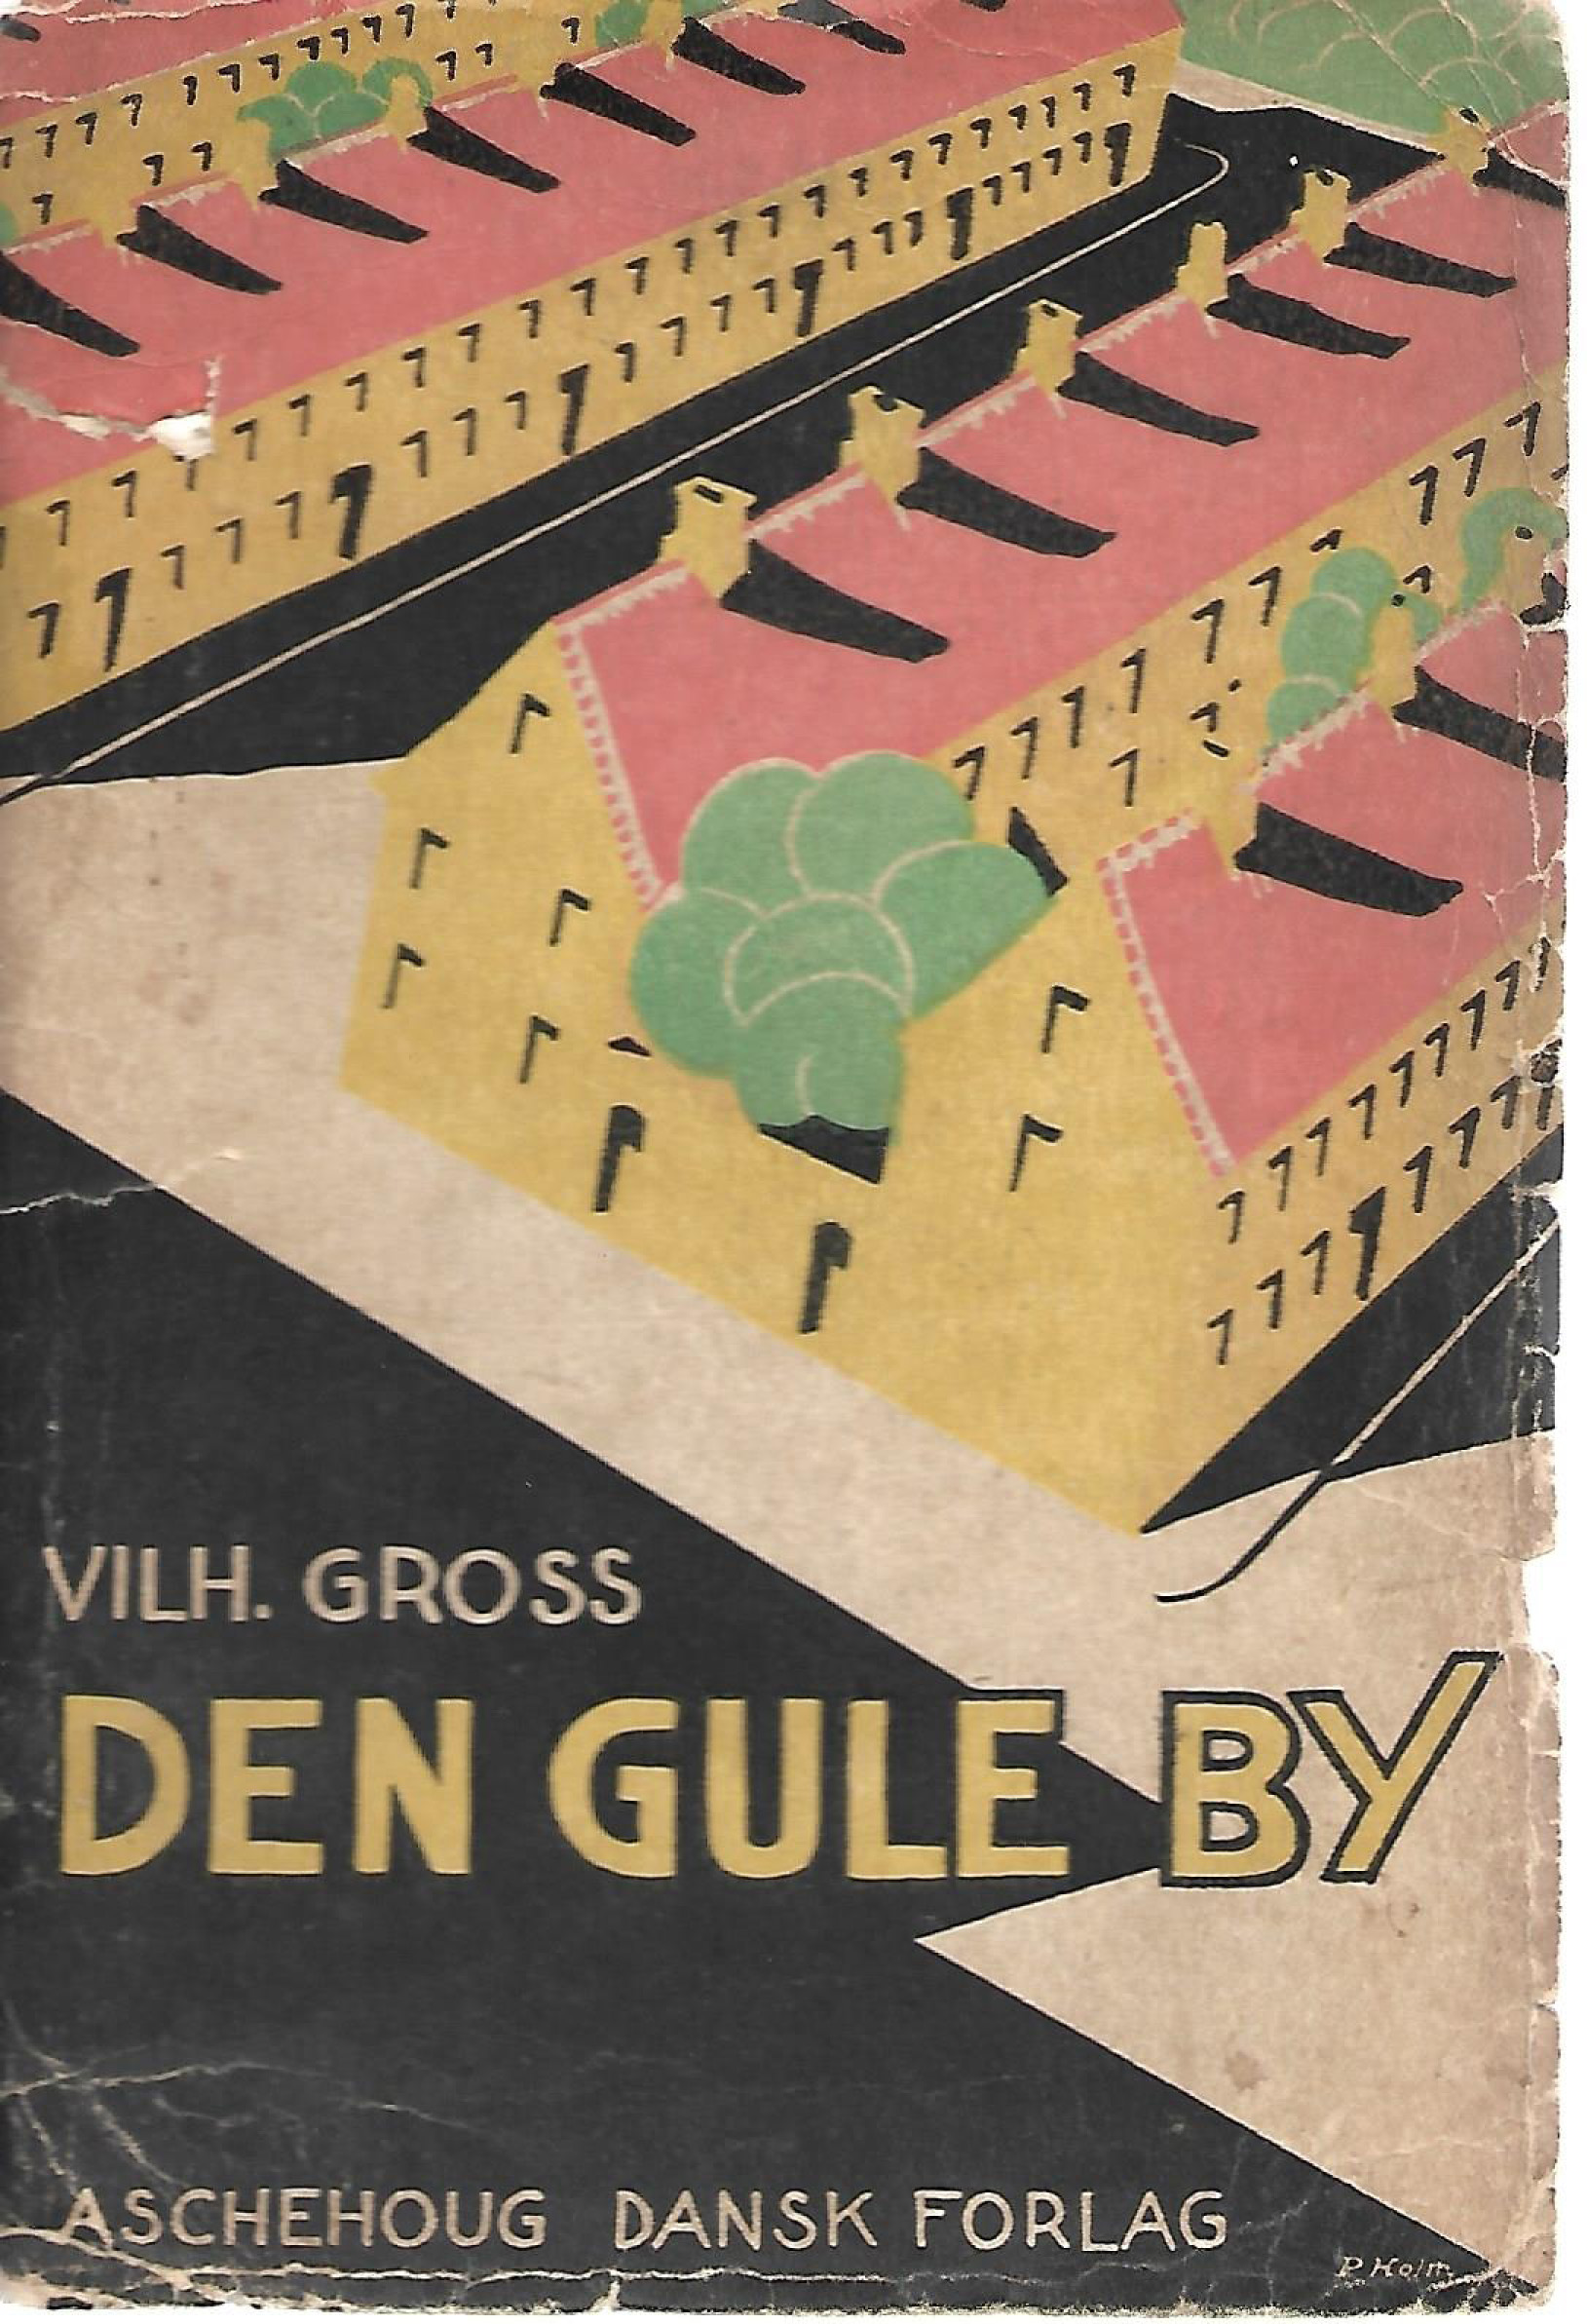 Den gule by - Vilh Gross-1